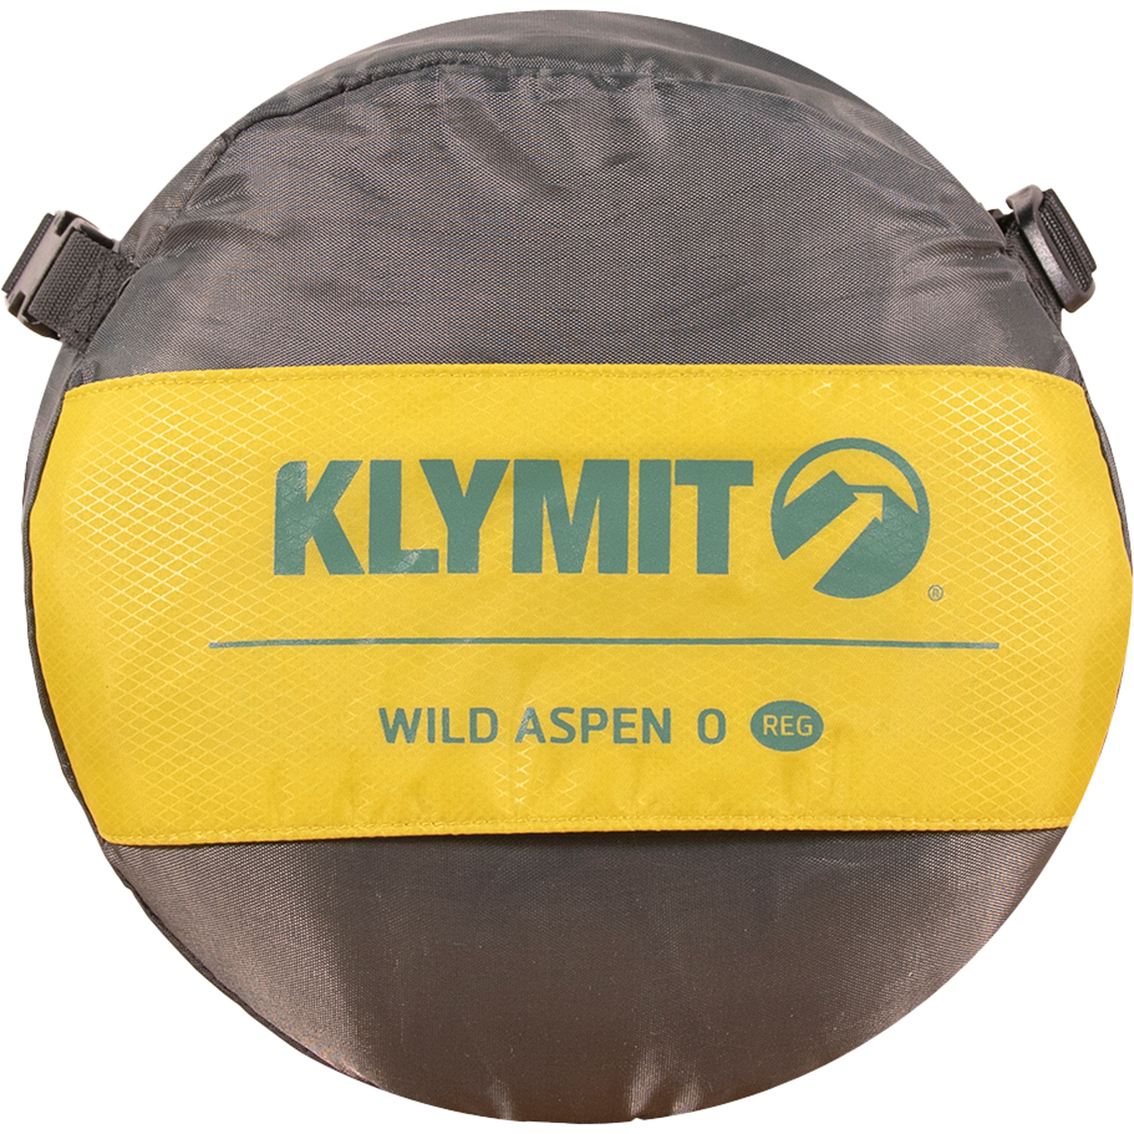 Klymit Wild Aspen 0 Extra Large Sleeping Bag - Image 3 of 8